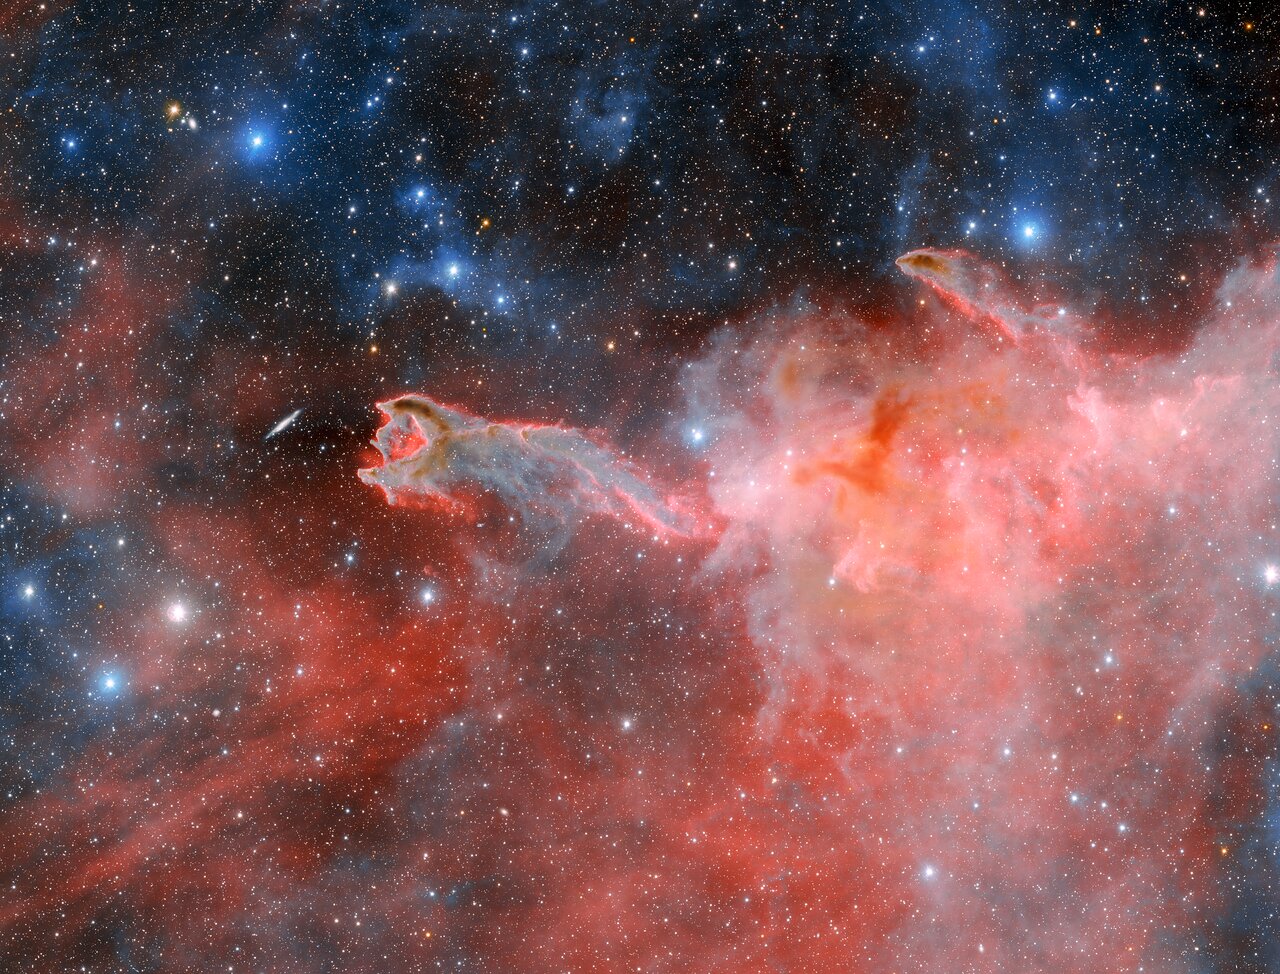 Esta estructura nublada y ominosa es CG 4, un glóbulo cometario apodado 'Mano de Dios'. CG 4 es uno de los muchos glóbulos cometarios presentes en la Vía Láctea, y la forma en que estos objetos adquieren su forma distintiva sigue siendo un tema de debate entre los astrónomos. Esta imagen fue capturada por la Cámara de Energía Oscura fabricada por el Departamento de Energía en el Telescopio de 4 metros Víctor M. Blanco de la Fundación Nacional de Ciencias de EE. UU. en el Observatorio Interamericano Cerro Tololo, un programa de NSF NOIRLab. En él, las características que clasifican a CG 4 como un glóbulo cometario son difíciles de pasar por alto. Su cabeza polvorienta y su larga y tenue cola se asemejan vagamente a la apariencia de un cometa, aunque no tienen nada en común. Los astrónomos teorizan que los glóbulos cometarios obtienen su estructura de los vientos estelares de estrellas calientes y masivas cercanas.